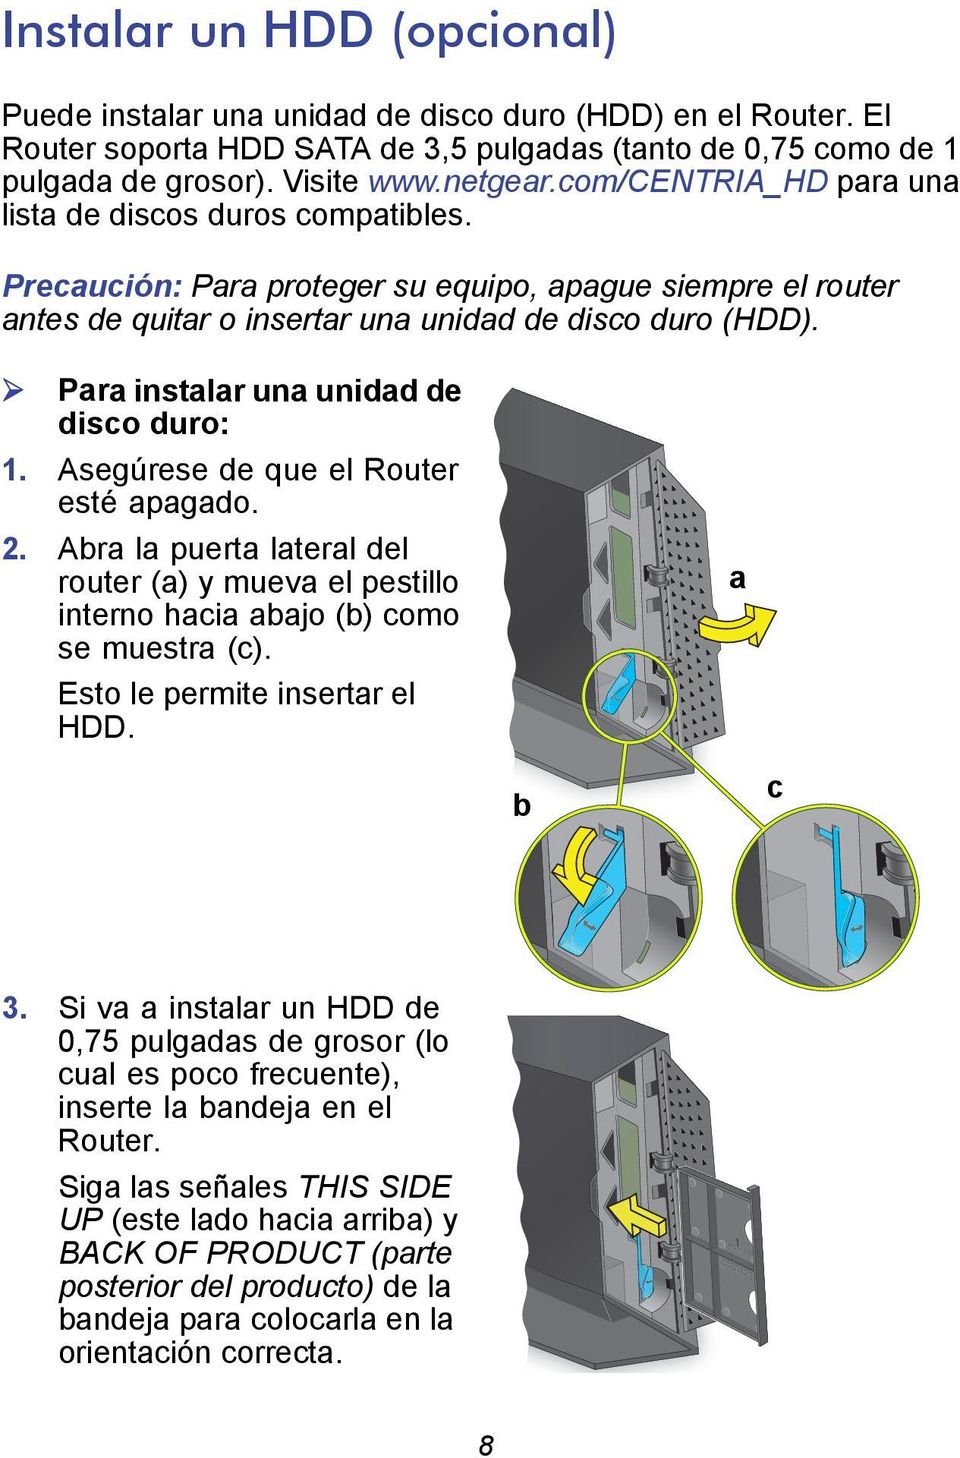 Para instalar una unidad de disco duro: 1. Asegúrese de que el Router esté apagado. 2. Abra la puerta lateral del router (a) y mueva el pestillo interno hacia abajo (b) como se muestra (c).